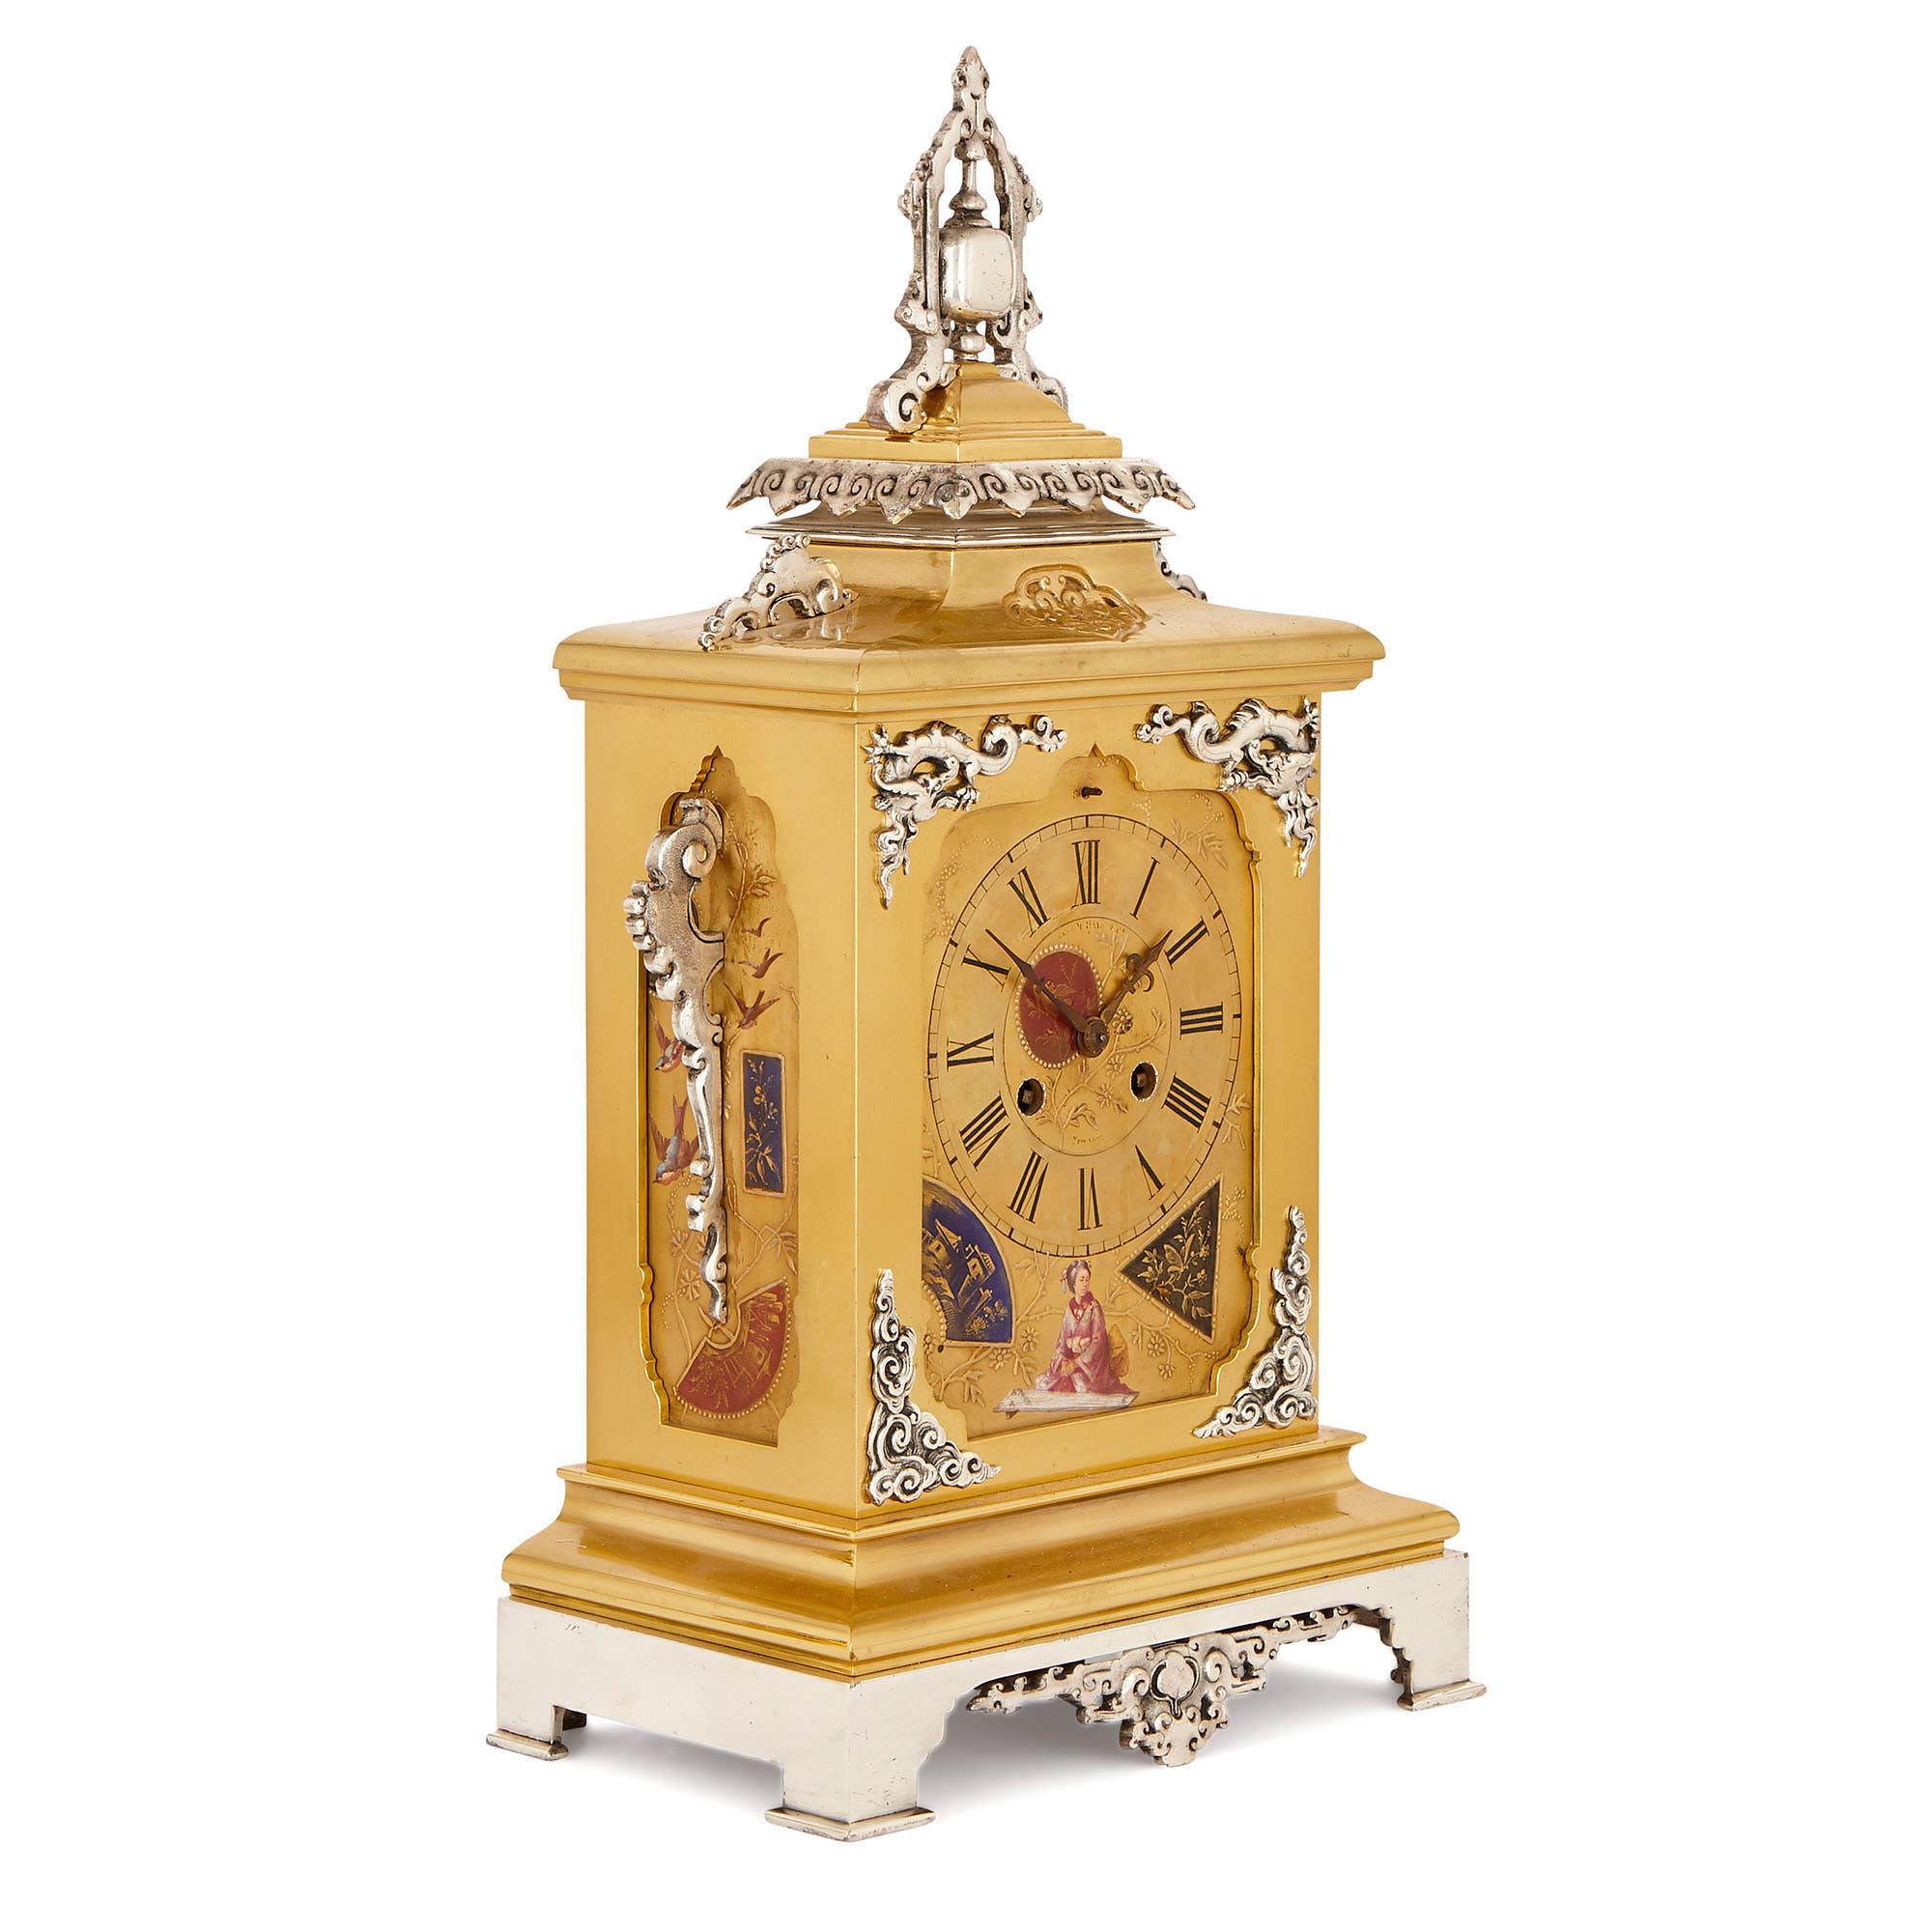 Ce jeu d'horloges de style japonais a été fabriqué en France vers 1880. L'ensemble se compose d'une horloge centrale, qui est accompagnée de deux vases. 

L'horloge centrale présente un corps rectangulaire en laiton doré dont le sommet est